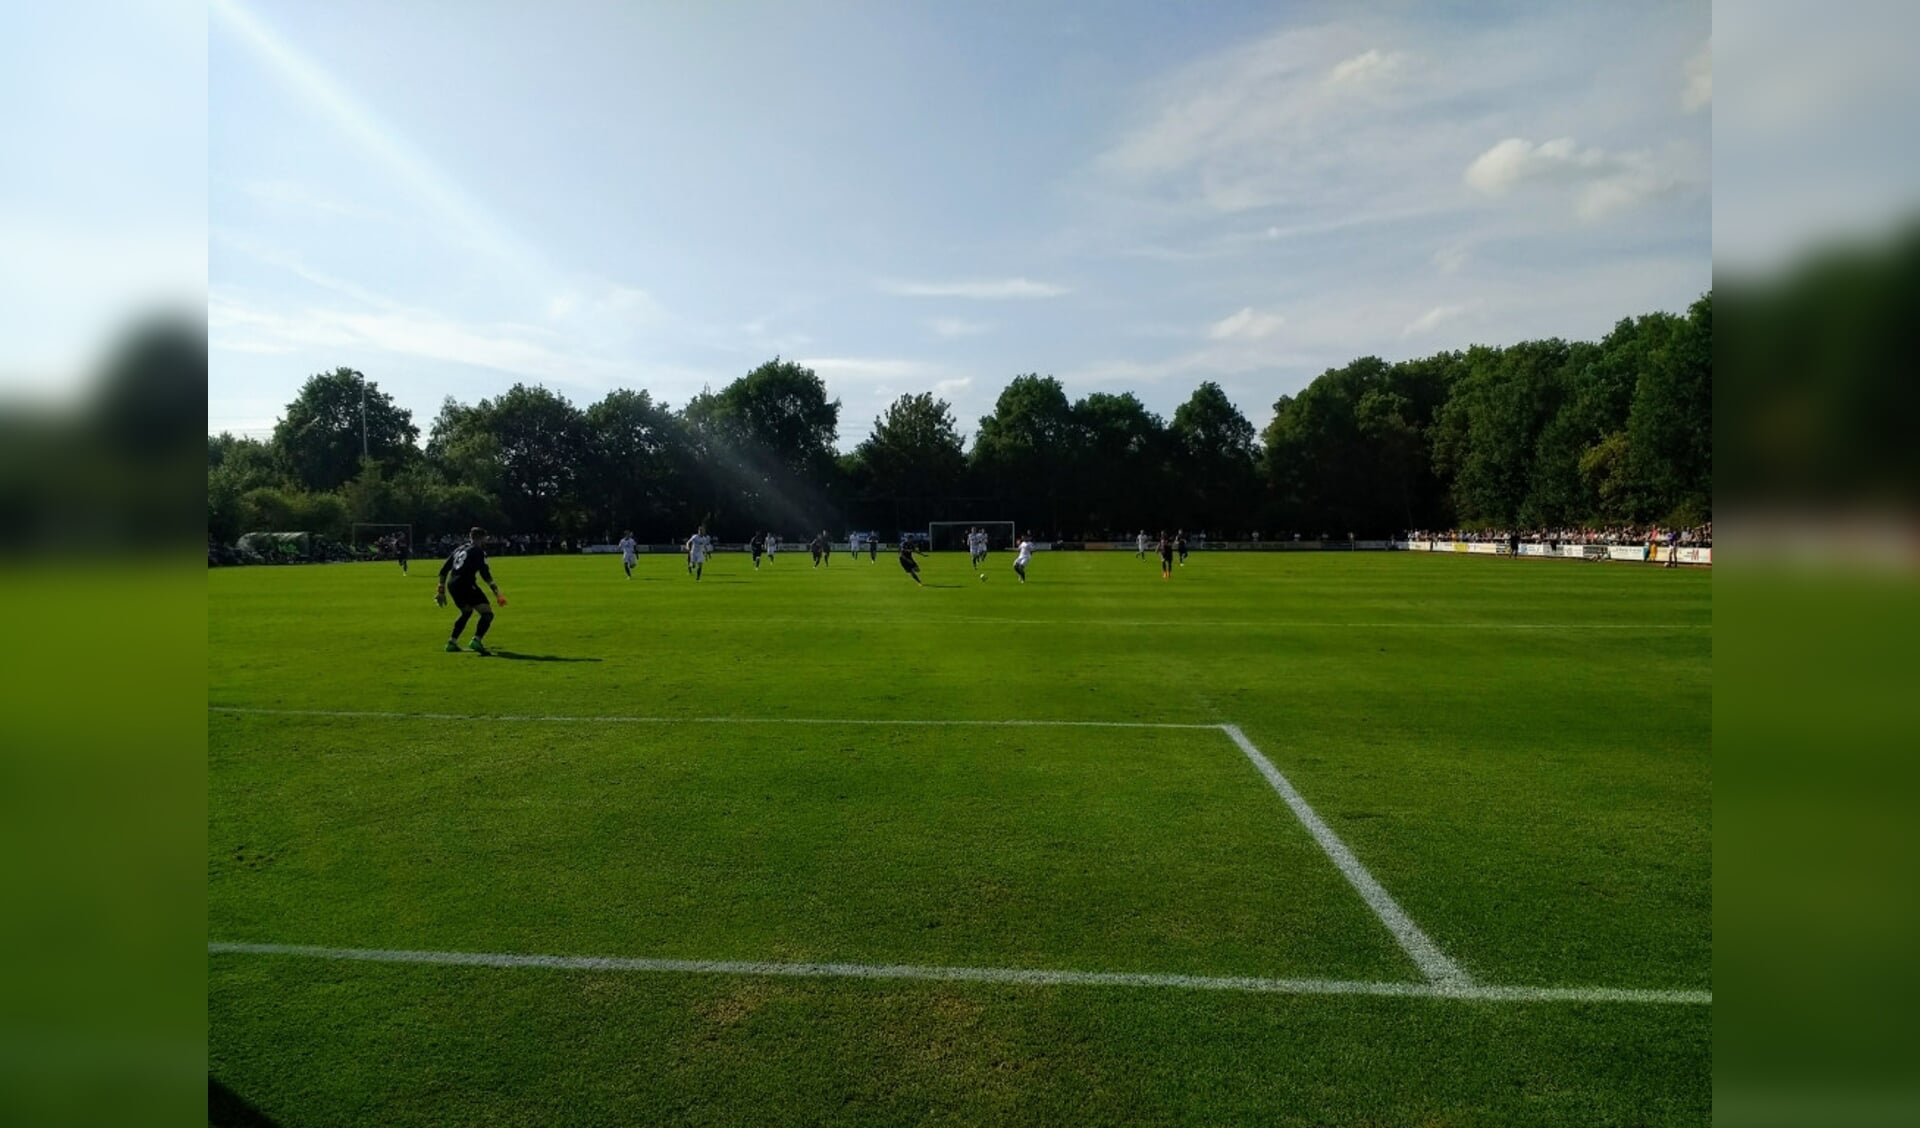  Het biljartlaken van vv Wijthmen (oefenwedstrijd PEC Zwolle in 2019)